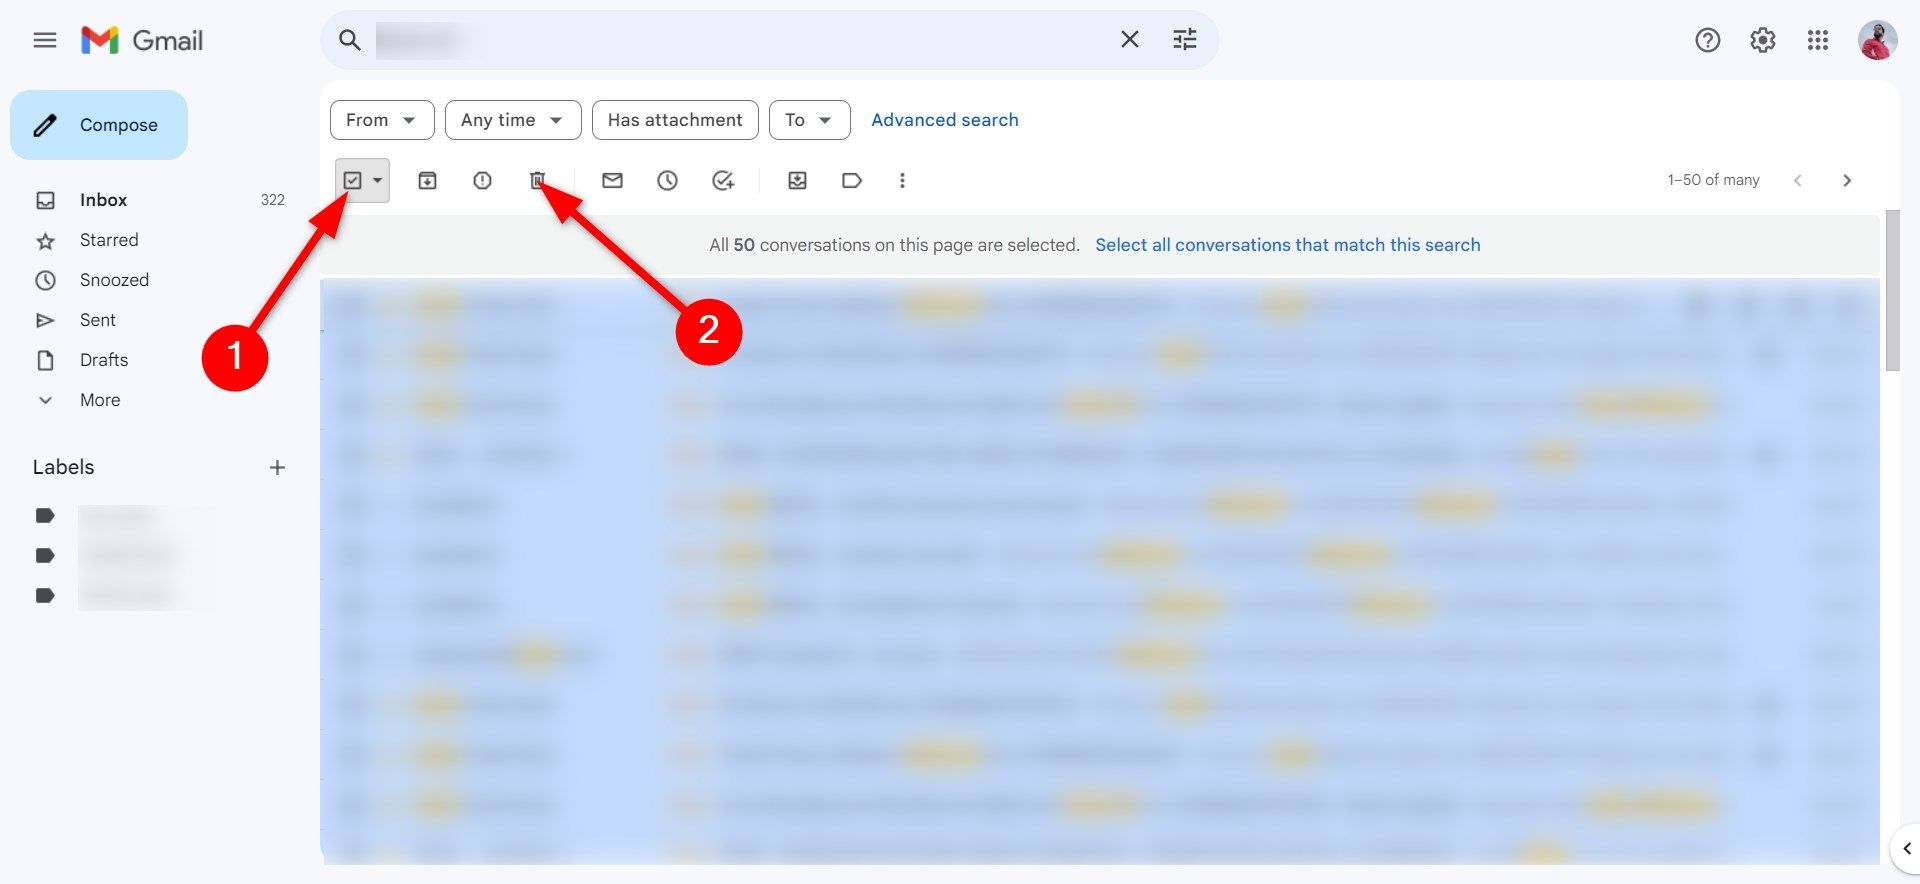 Exclua mensagens enviadas pelo remetente no Gmail